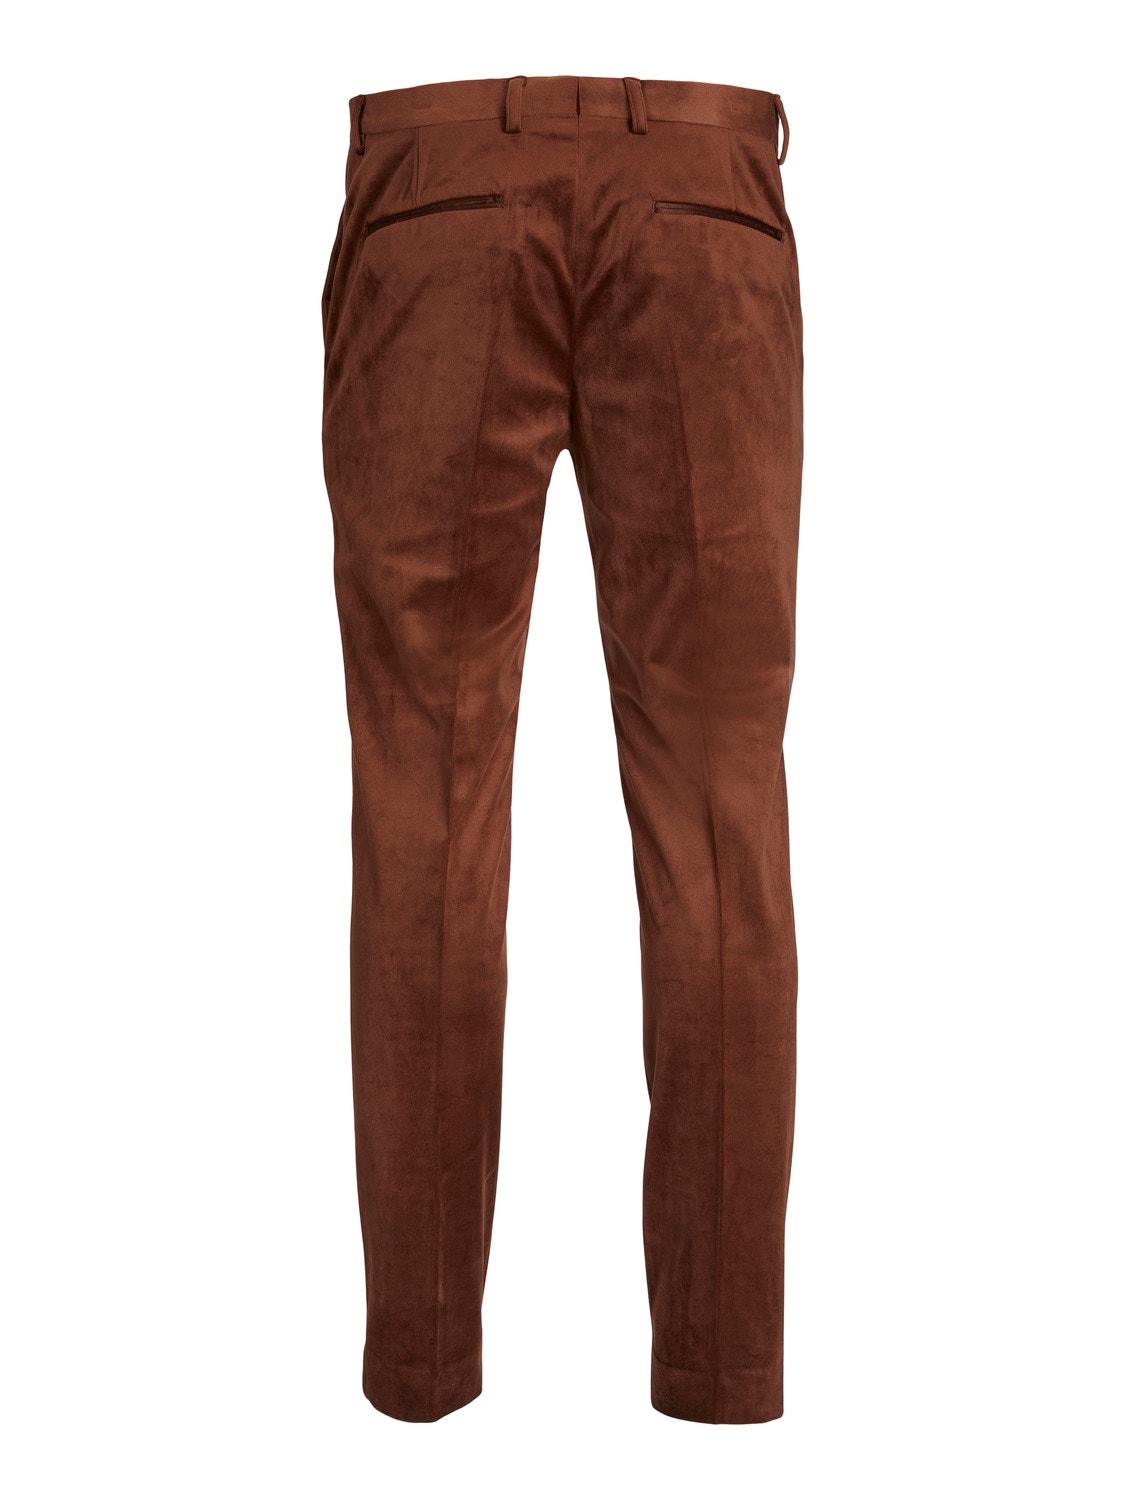 Jack & Jones JPRVELVET Regular Fit Eleganckie spodnie -Cherry Mahogany - 12143387